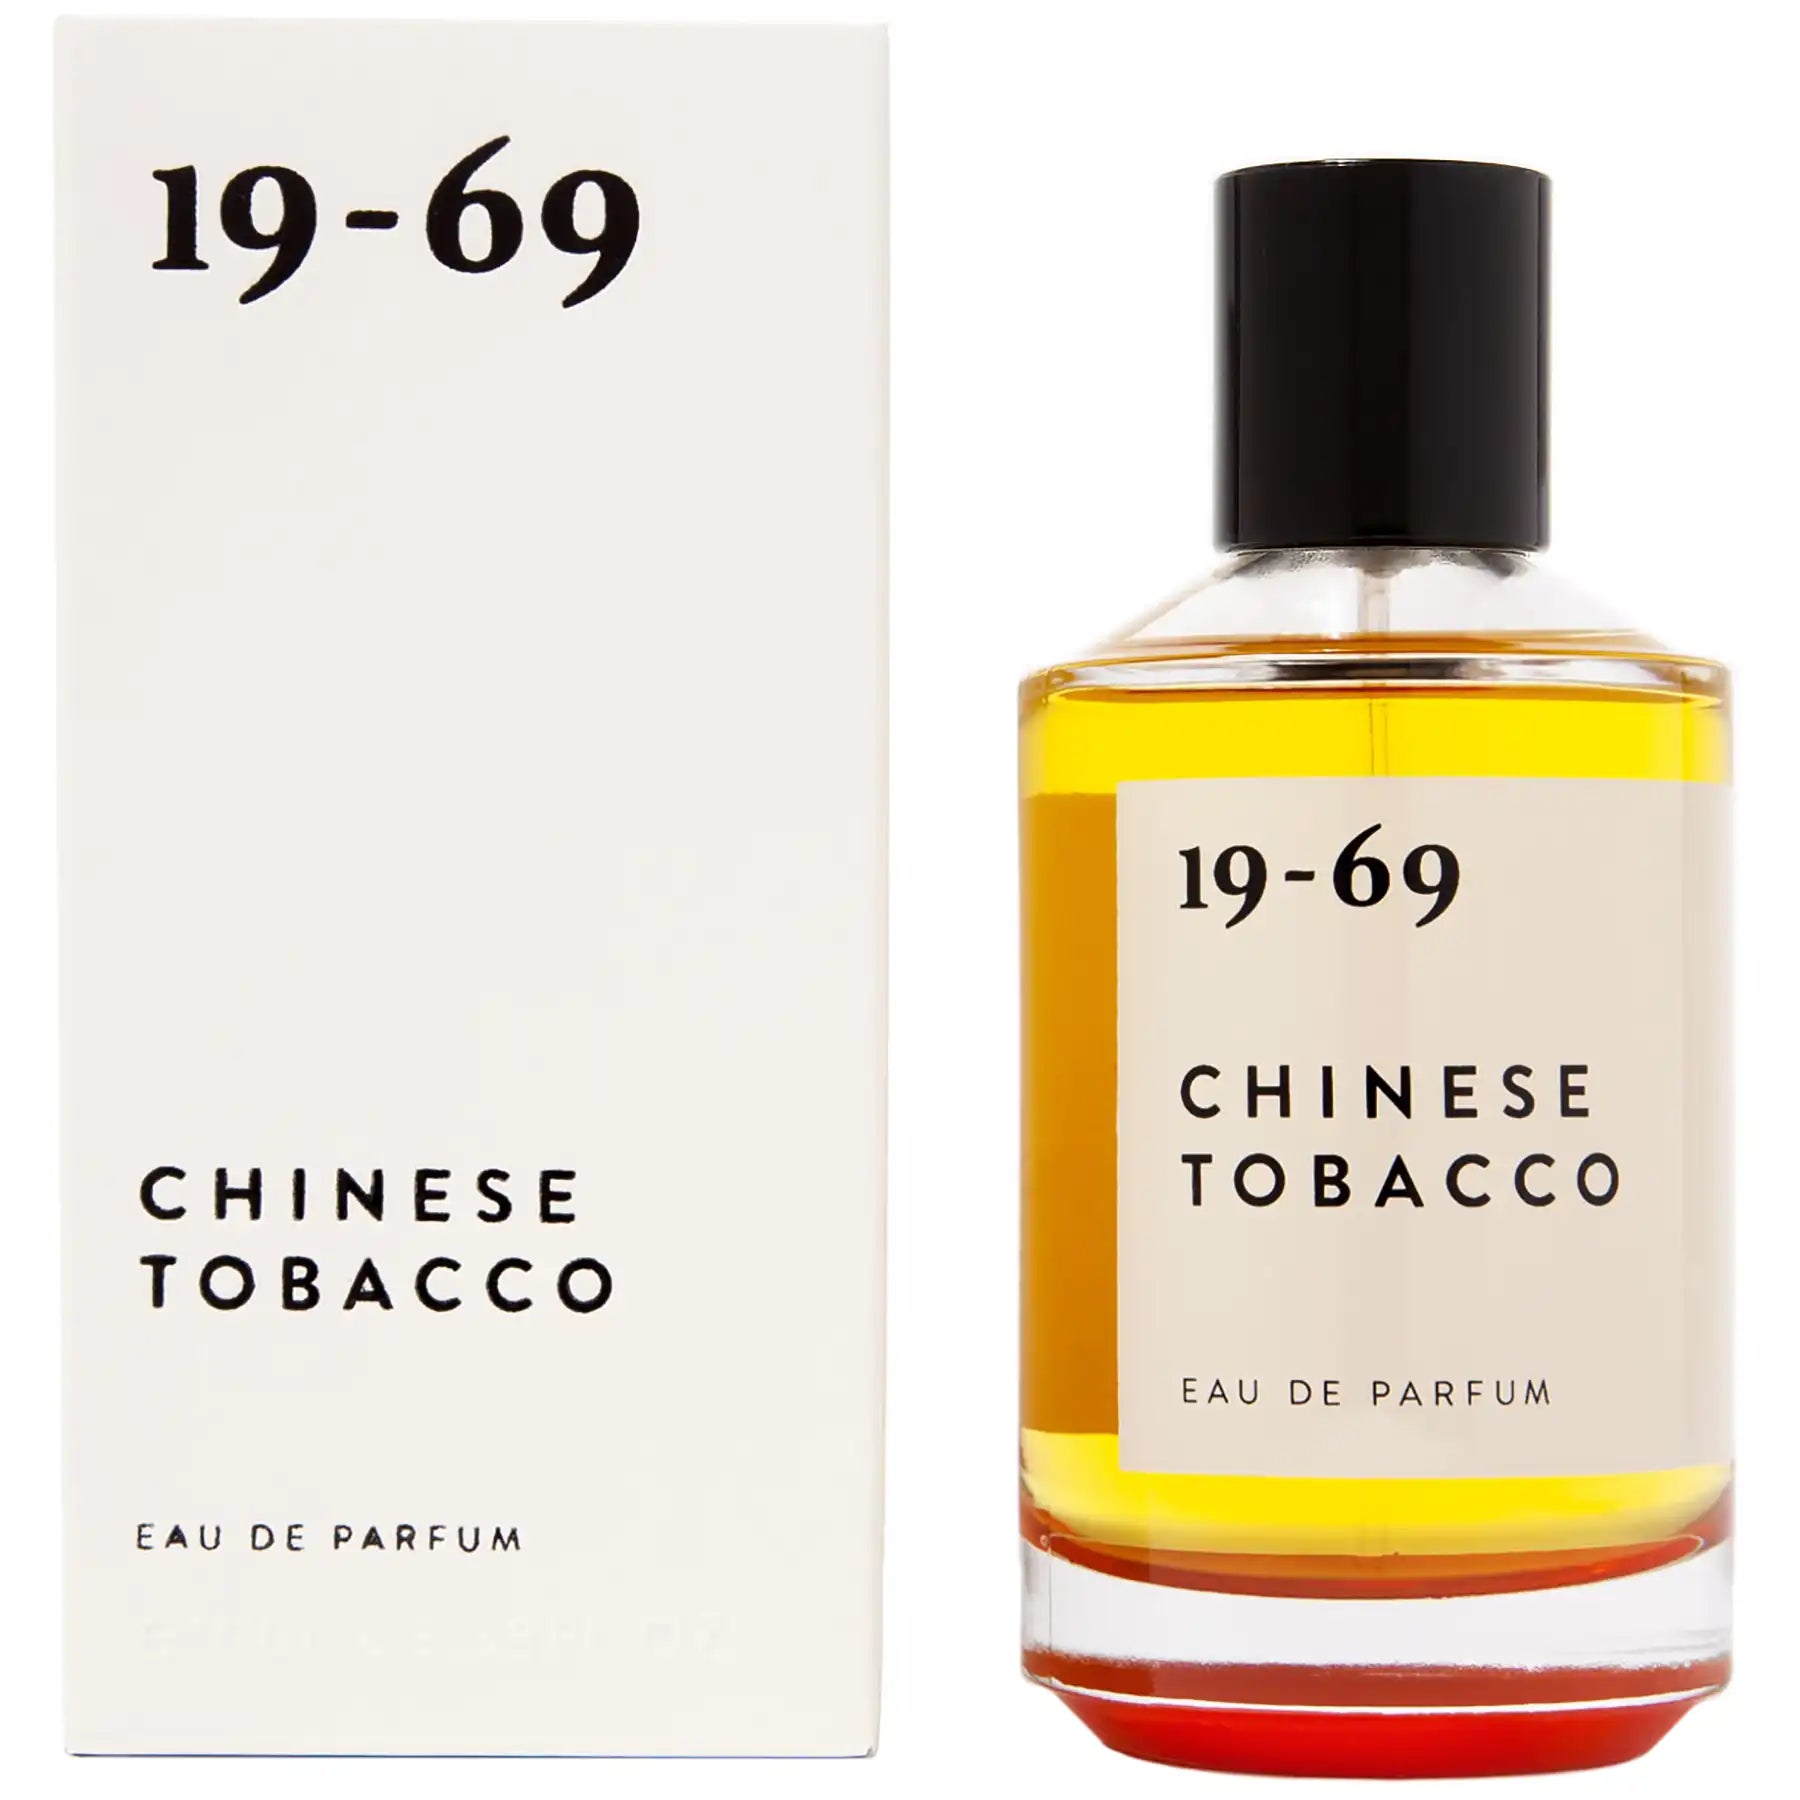 1969 Chinese Tobacco Perfume